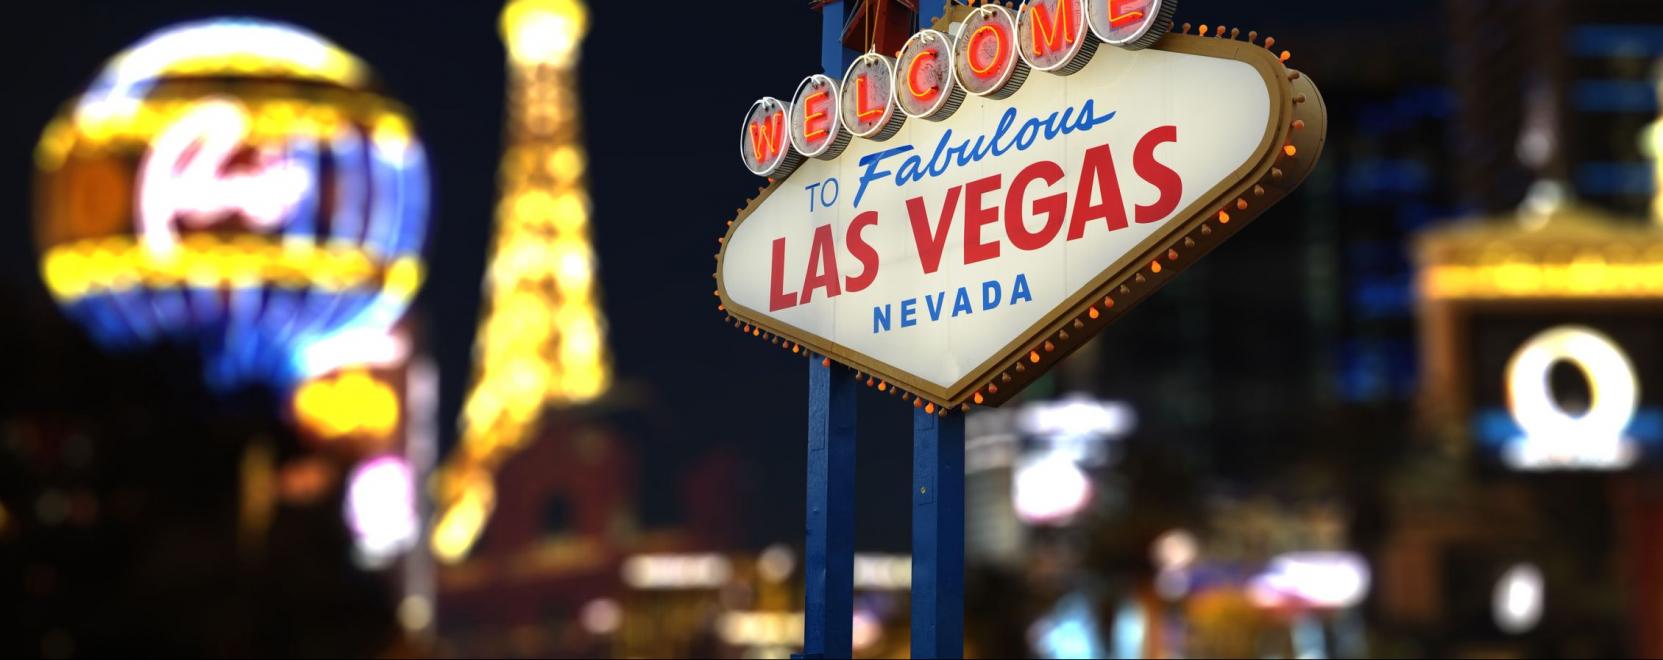 A koronavírus miatt lefújták a Las Vegas-i CES-t